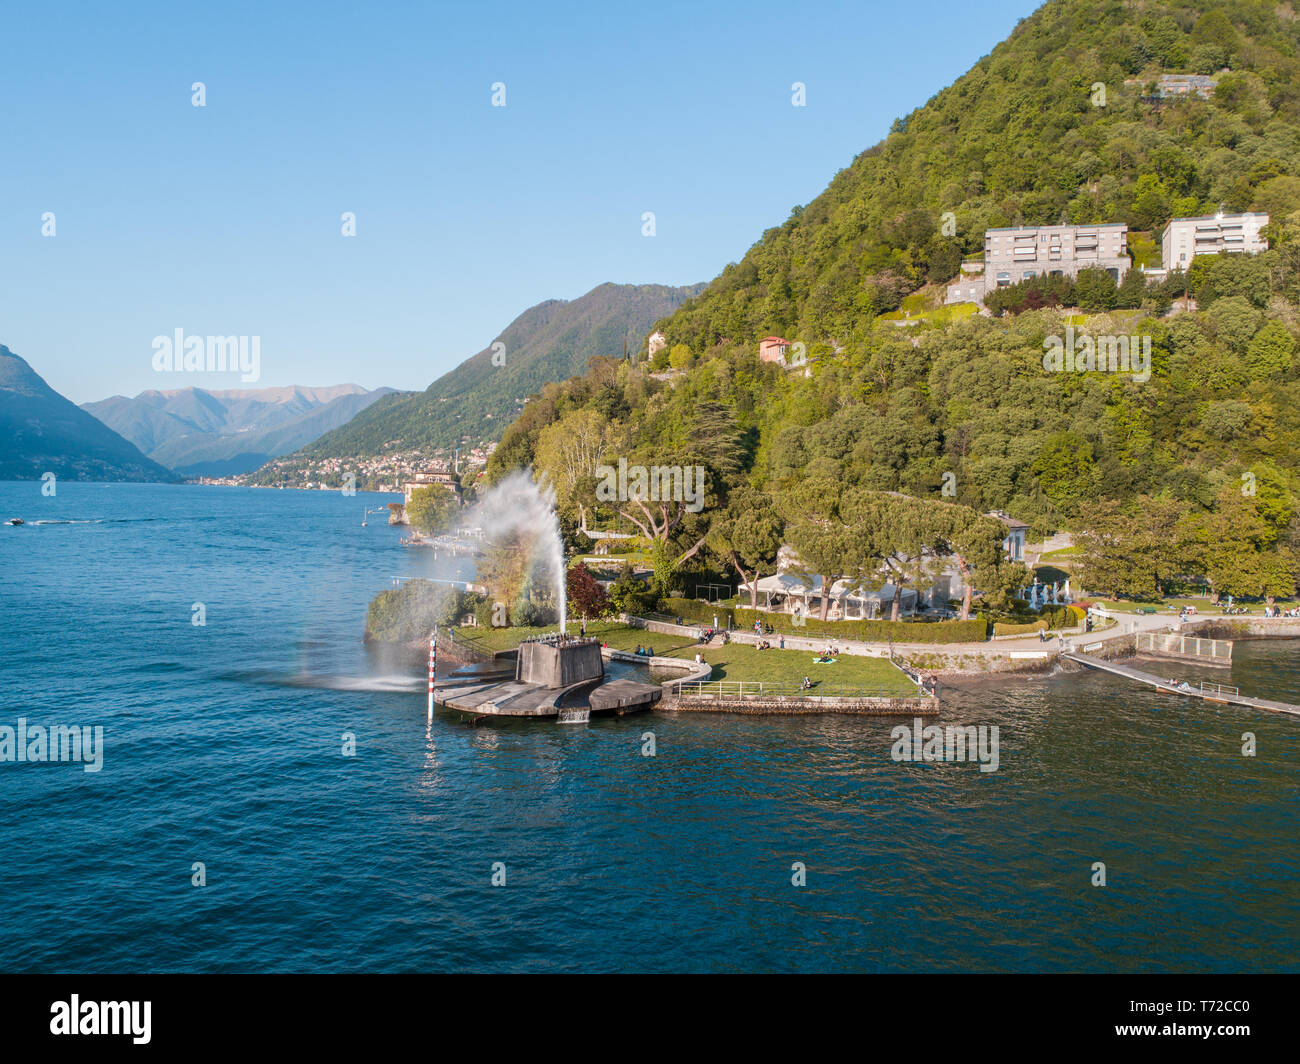 Lake of Como, Villa Geno and big fountain. Tourist attraction in Italy Stock Photo